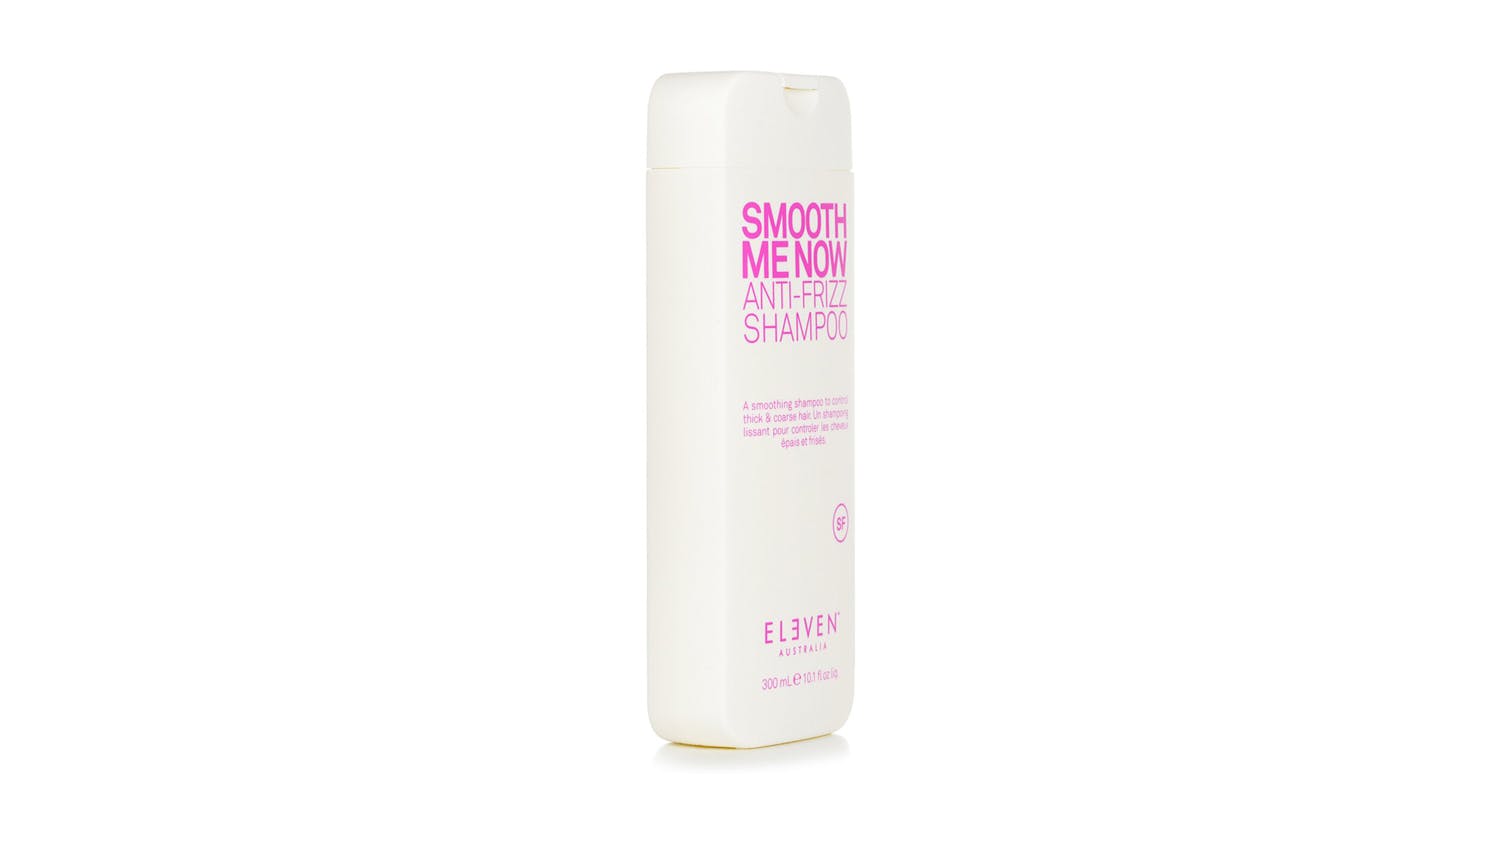 Smooth Me Now Anti-Frizz Shampoo - 300ml/10.1oz